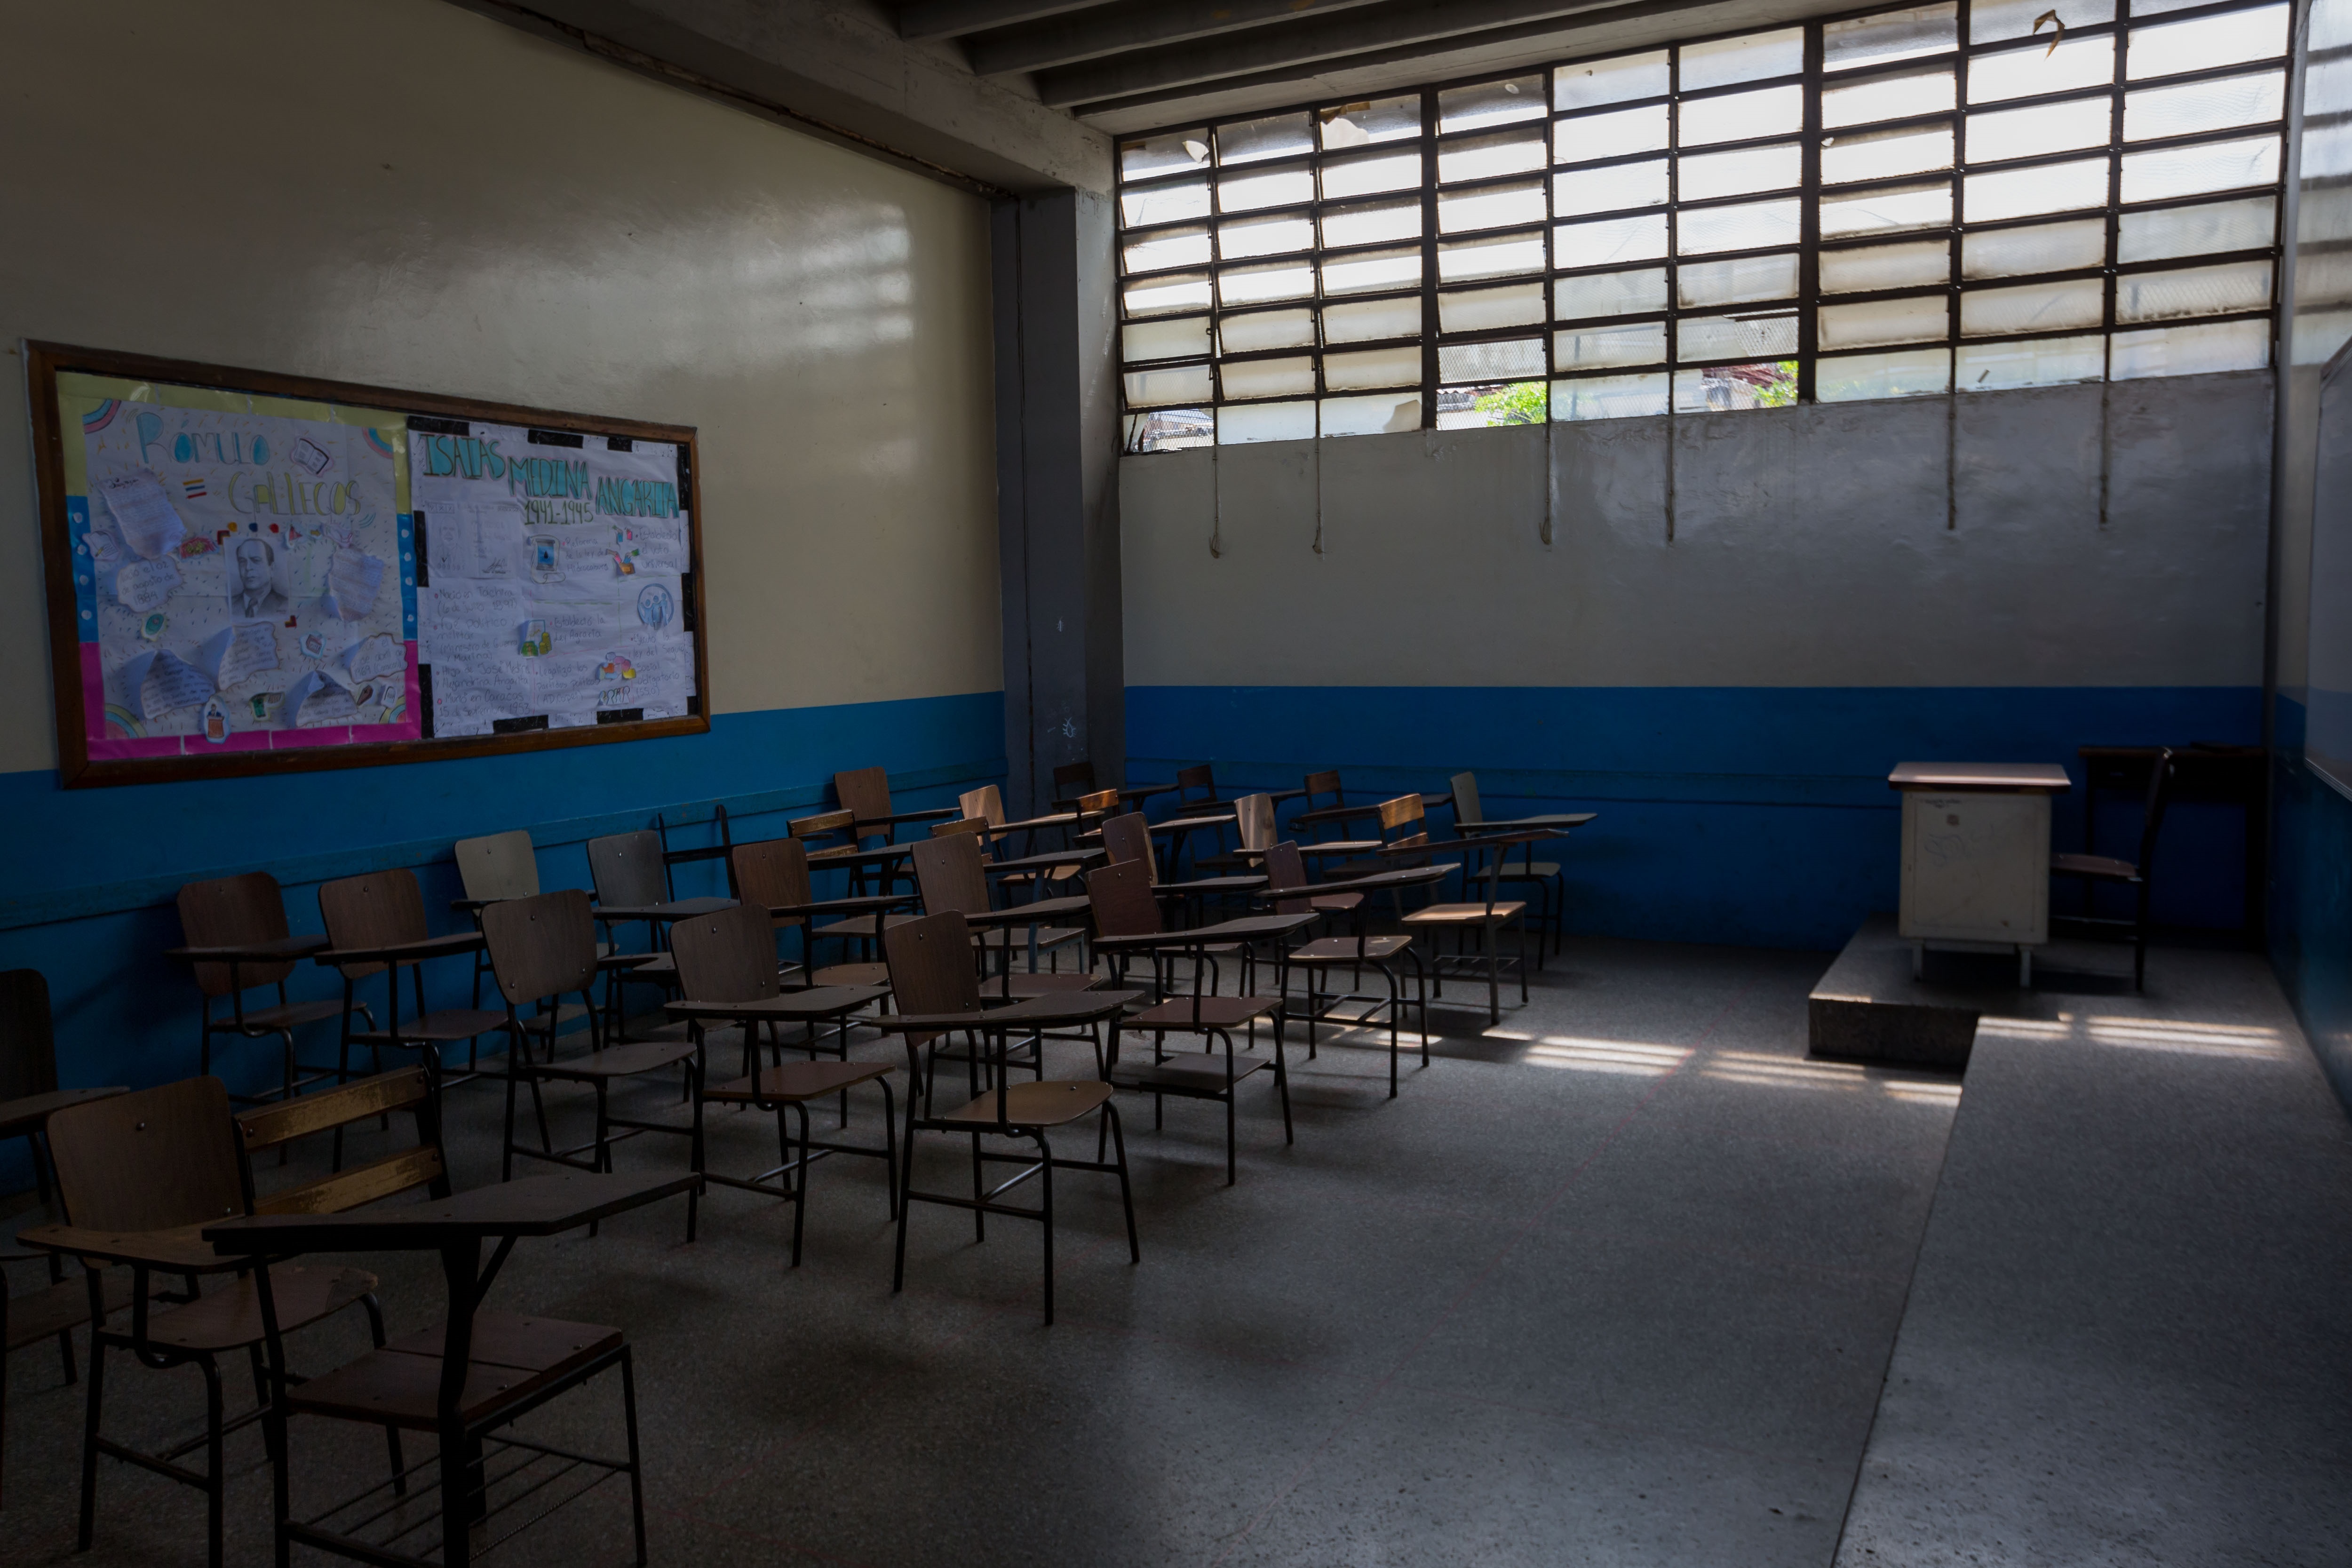 Dirigentes sindicales venezolanos consideran “criminal” el regreso a las aulas